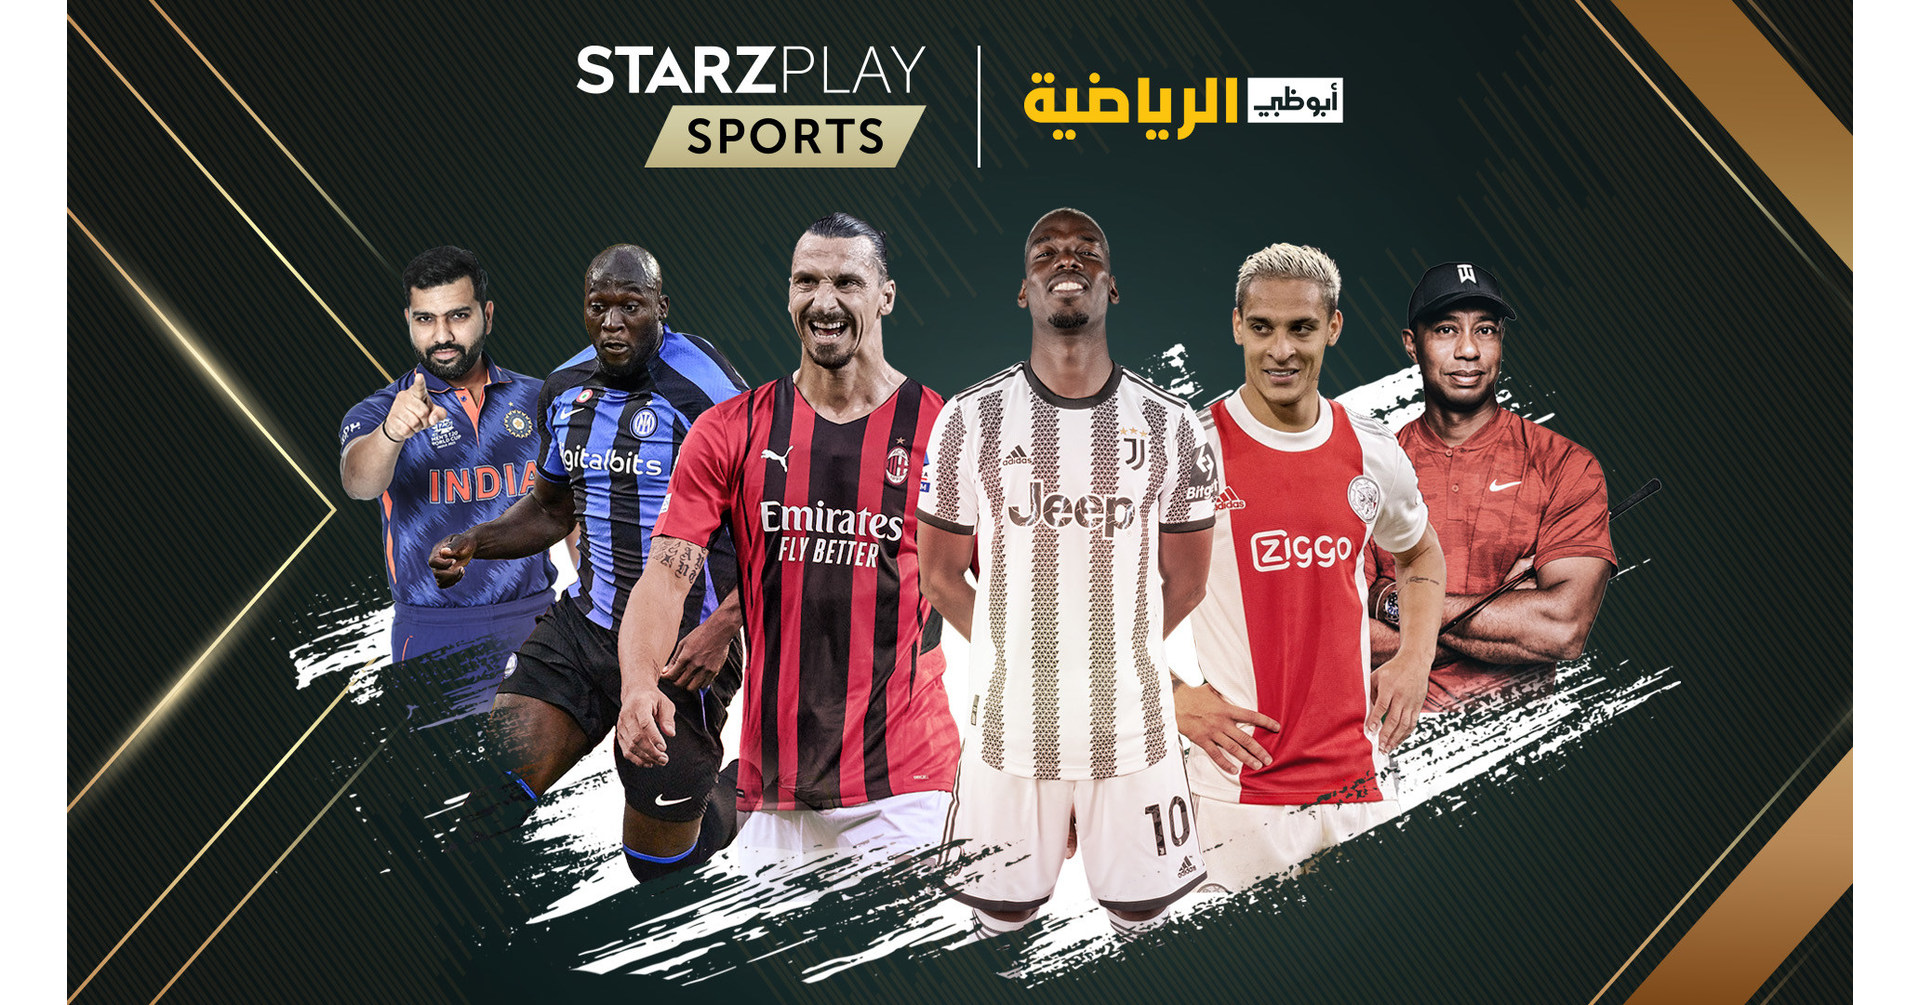 De geheel nieuwe STARZPLAY Sports om live sportuitzendingen in de MENA-regio te verstoren